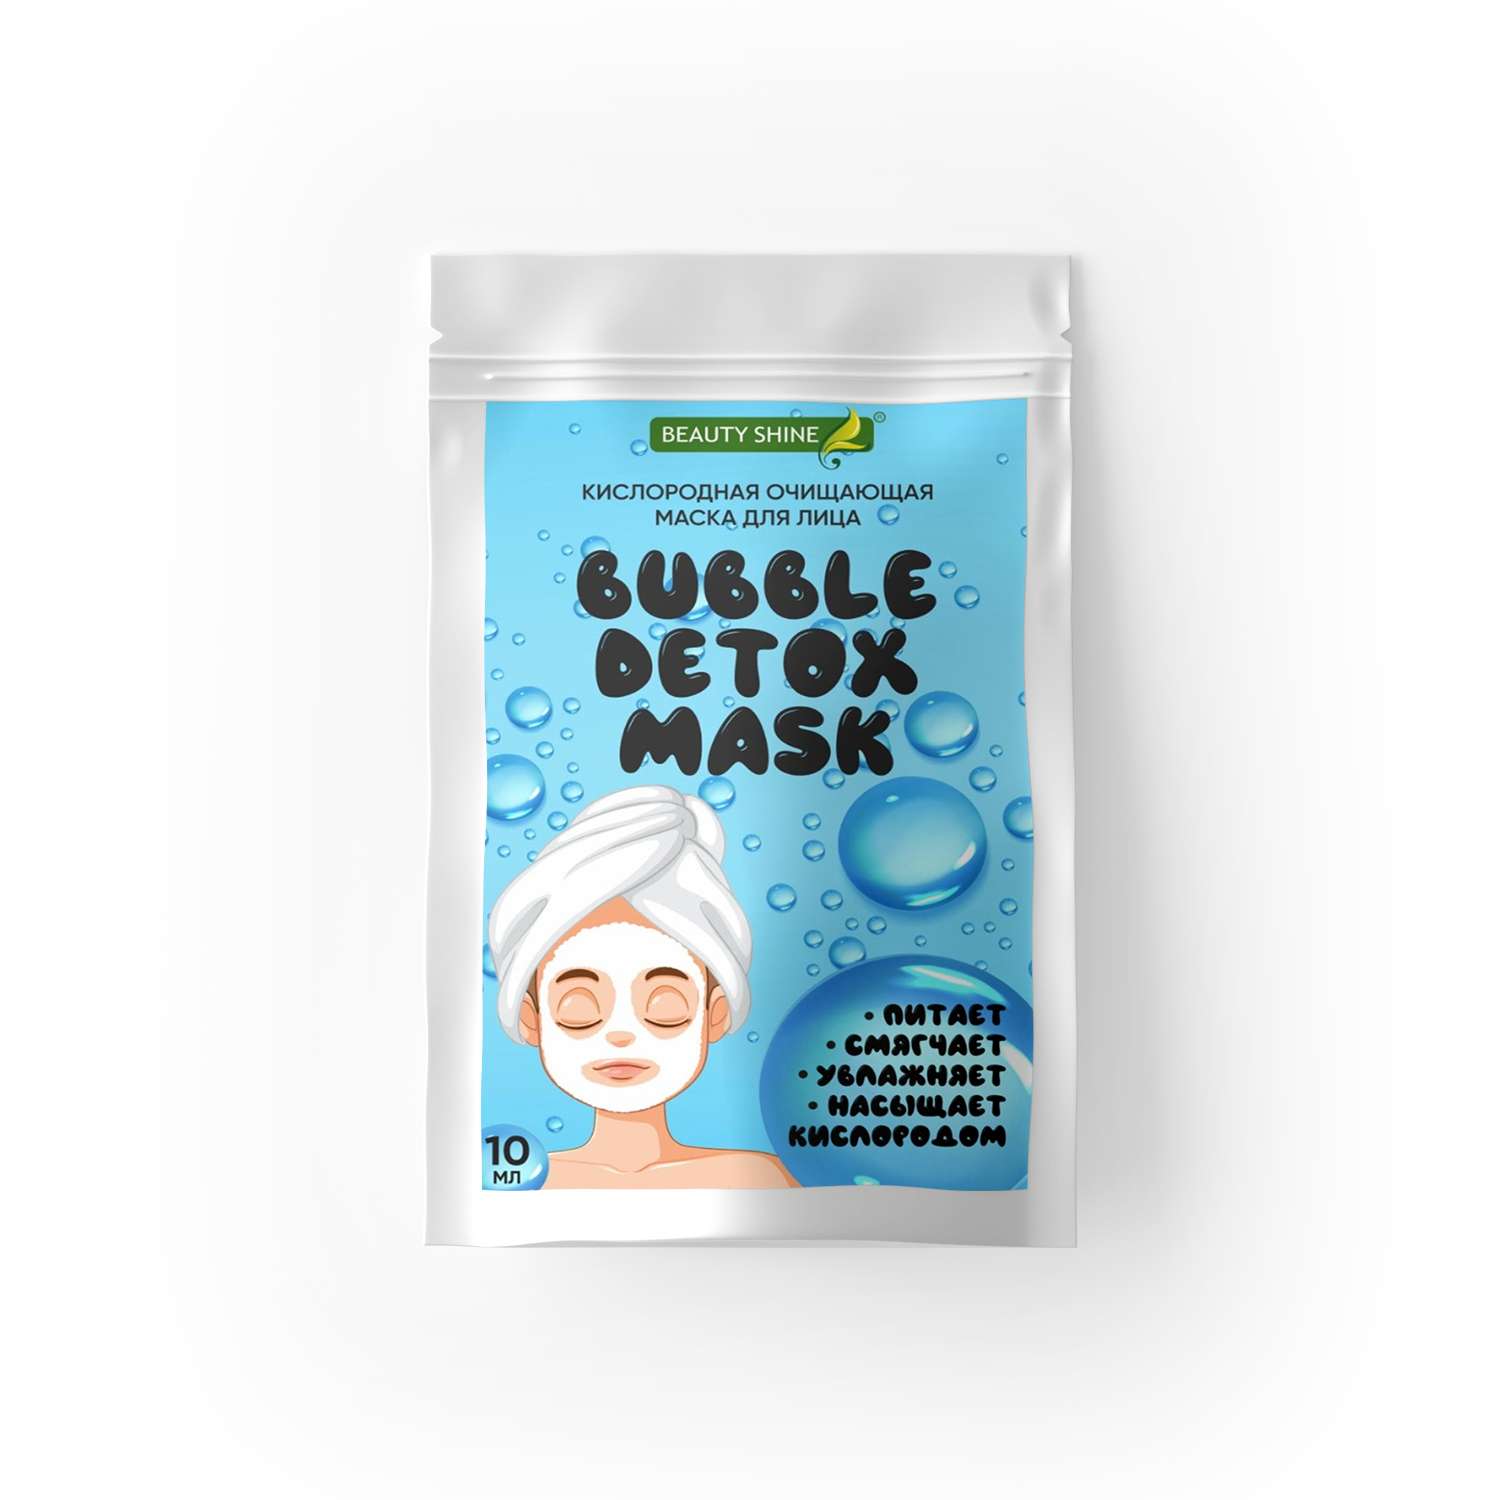 Маска для лица очищающая Beauty Shine Кислородная маска очищающая для лица - фото 1